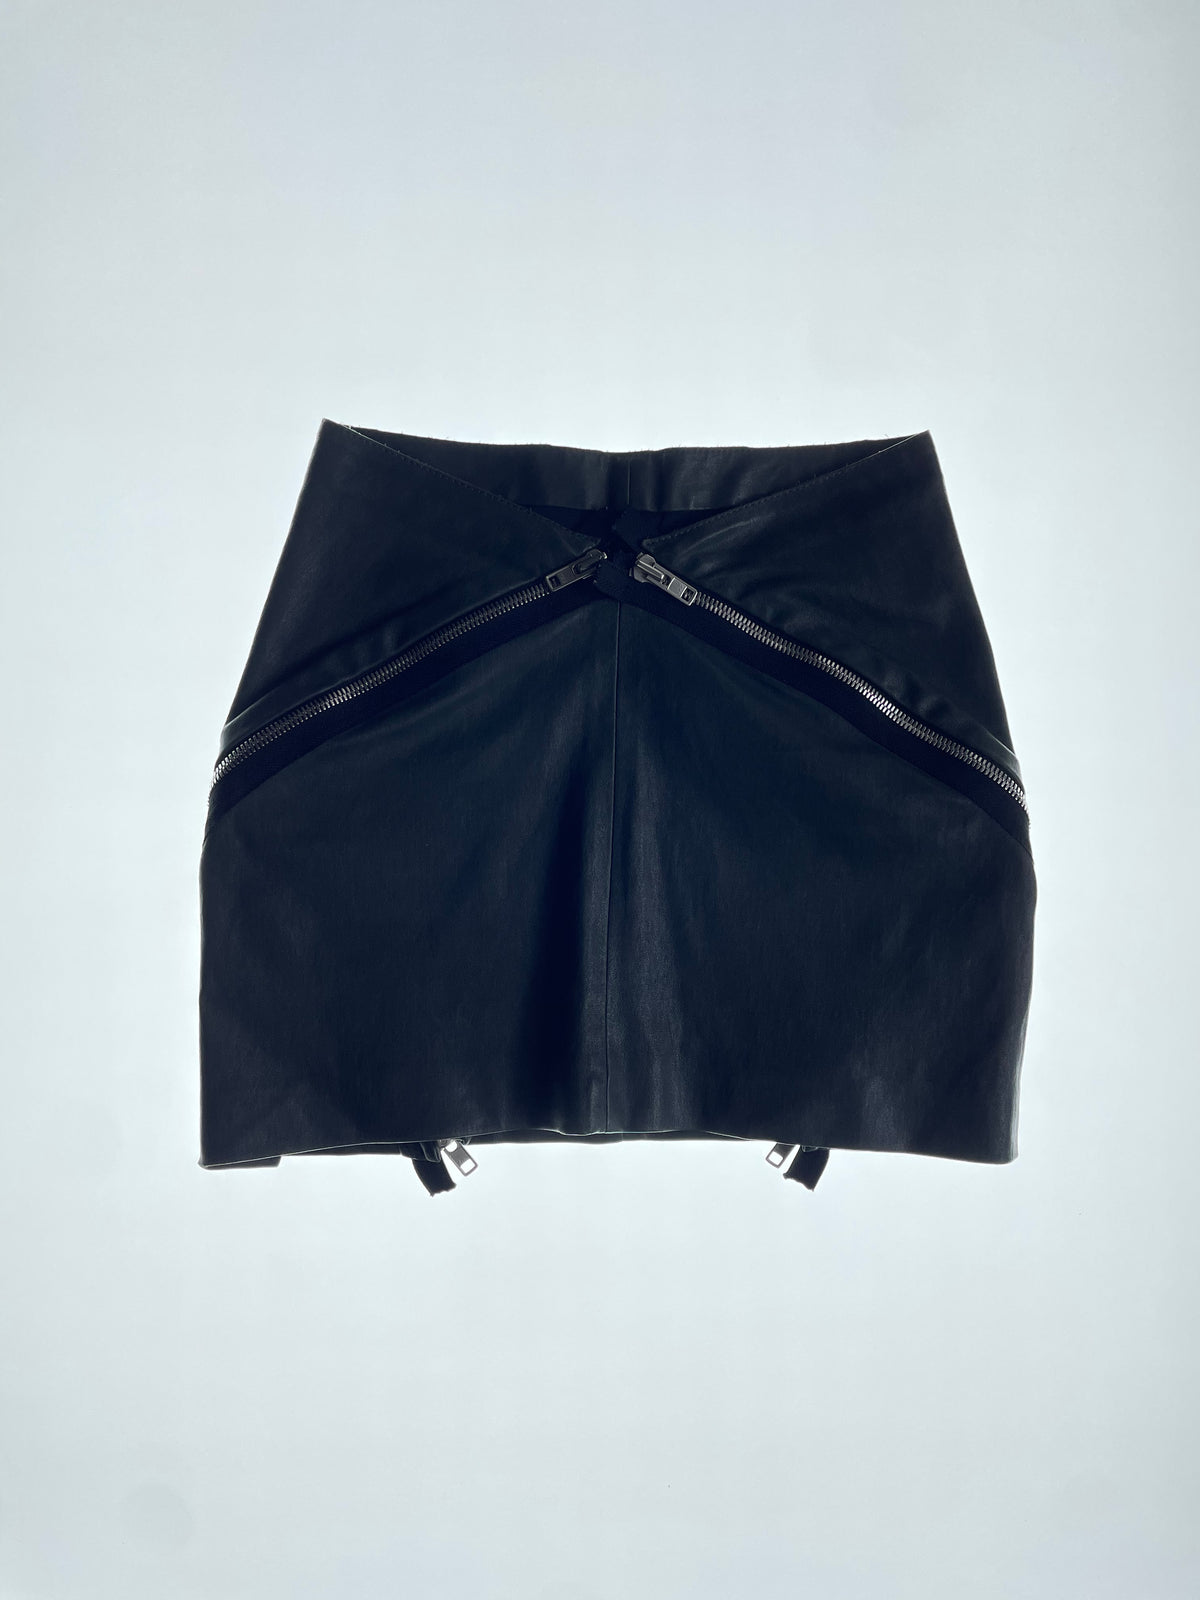 FW08 Zipper Skirt